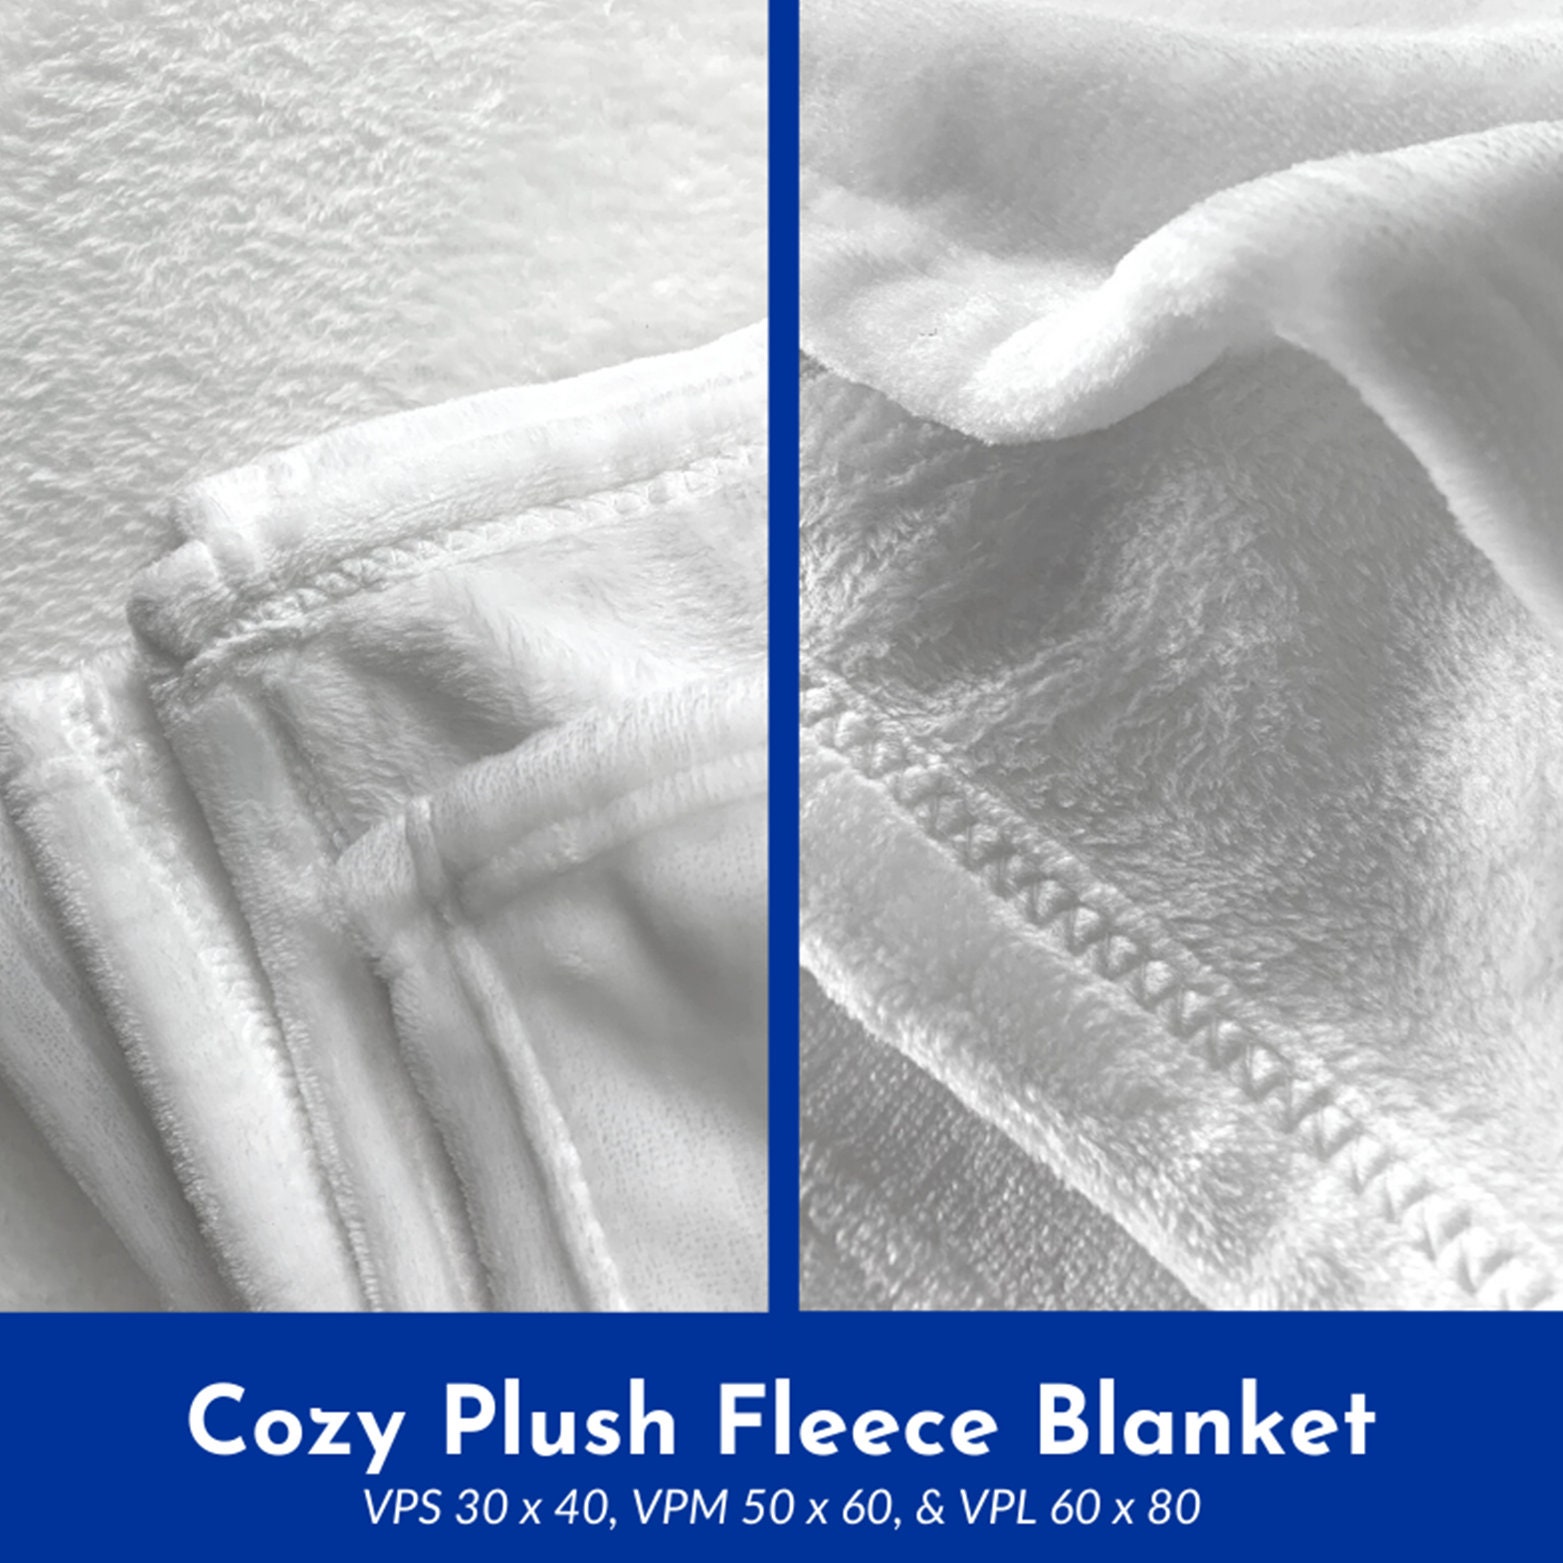 Discover Blanket For Mom, To My Mom Blanket, Mother Blanket, Letter From Son To Mom Blanket, Custom Name Blanket, Family Name Blanket